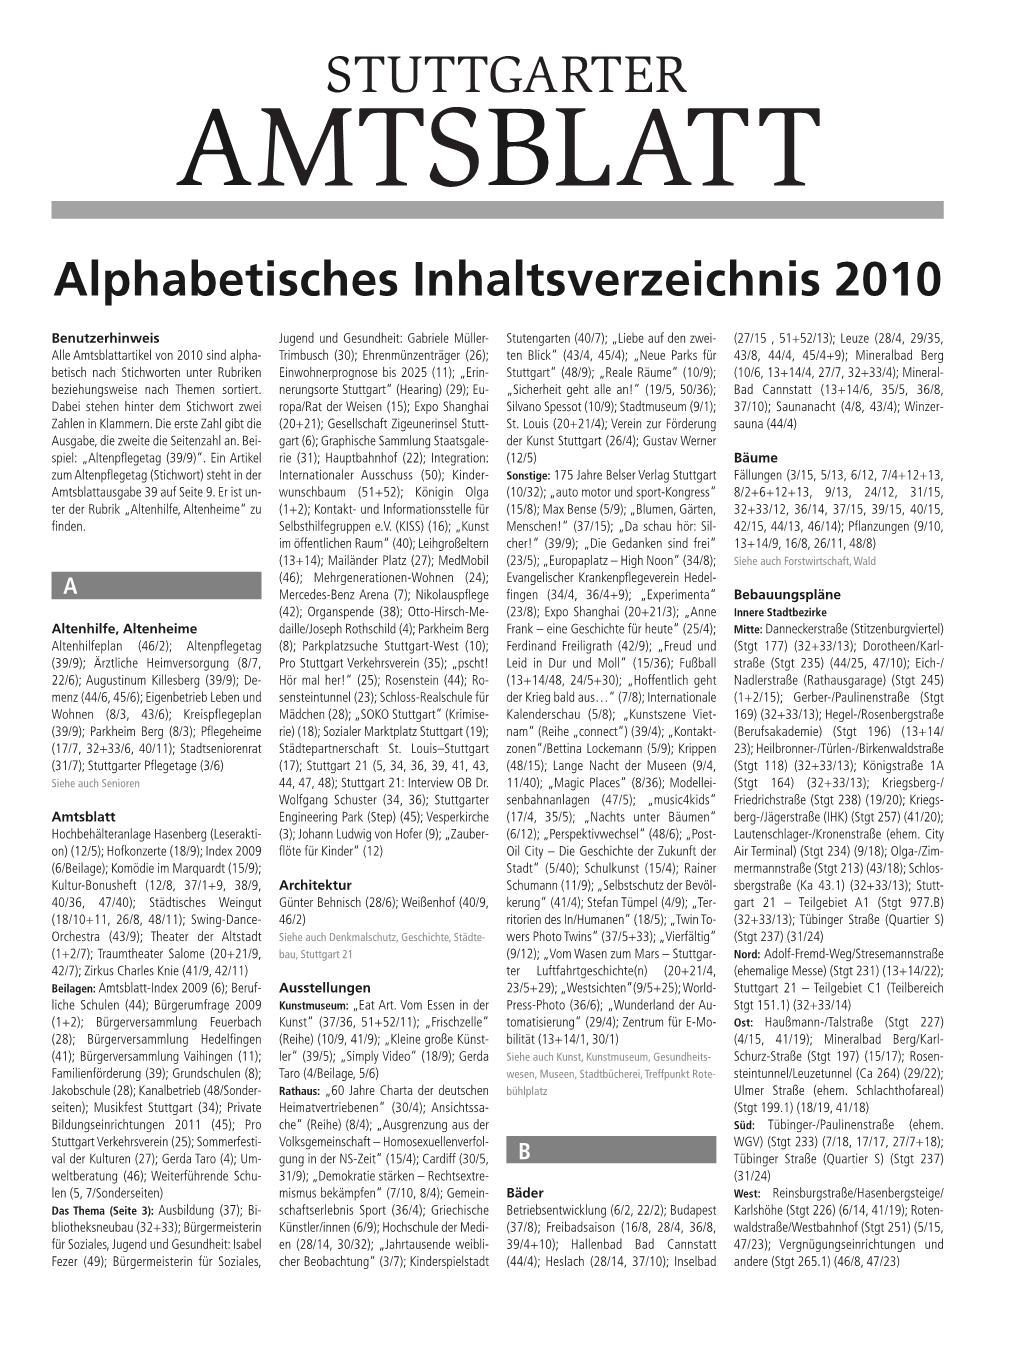 Index Fortlaufend 10 2 AB-Beilage 09.02.11 10:00 Seite 1